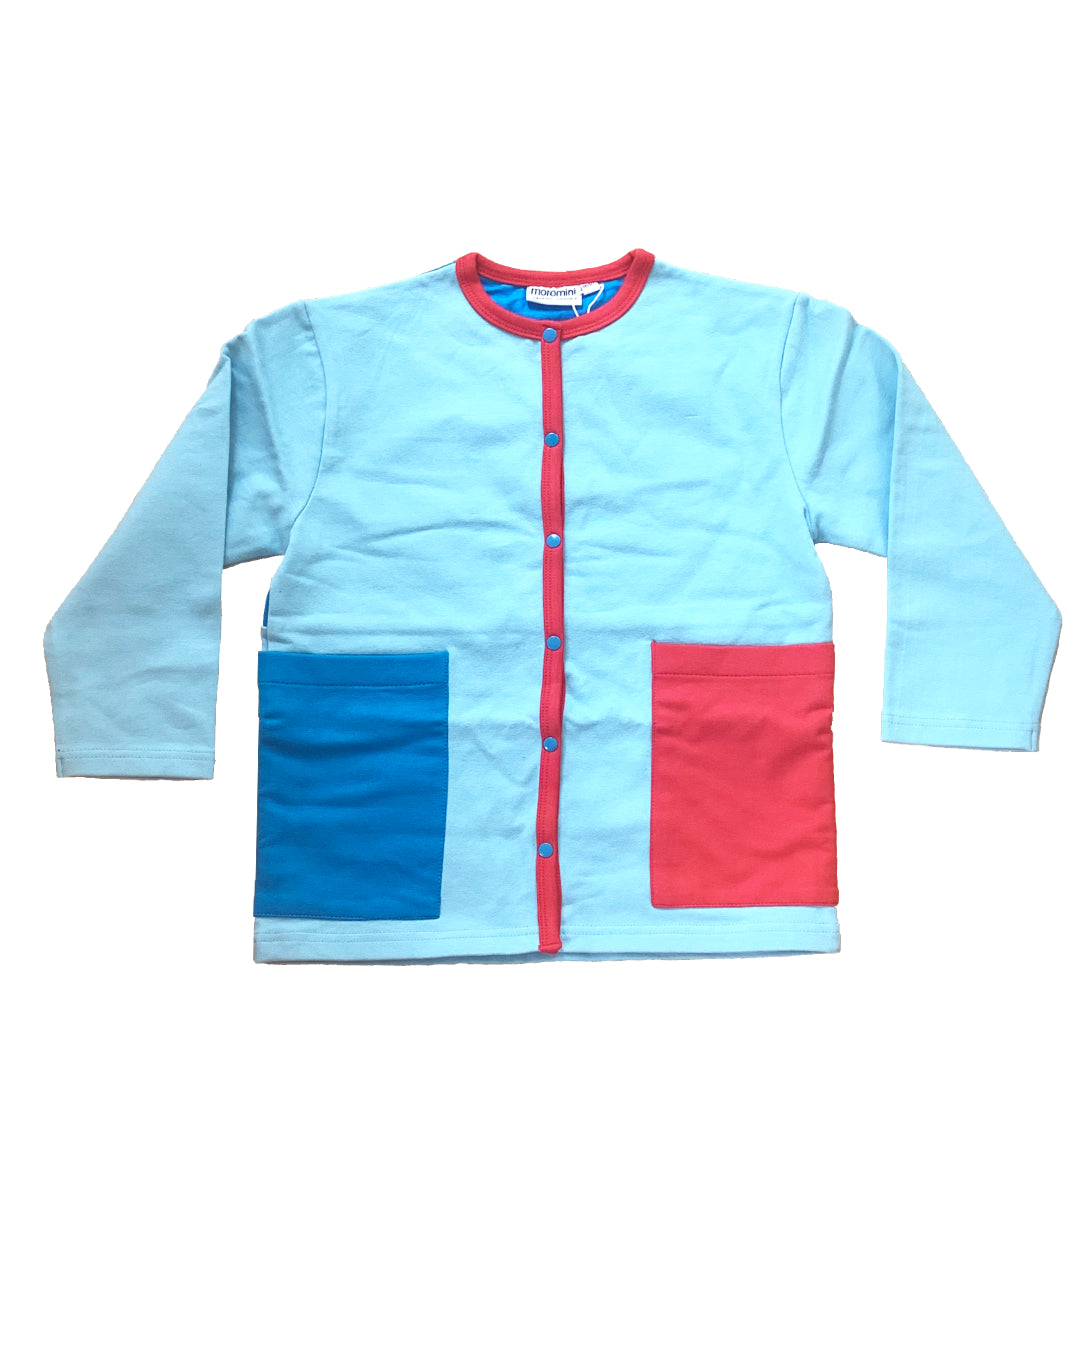 Hellblaue Jacke mit Druckknöpfen und aufgesetzten Taschen in blau und rot für Kinder aus Biobaumwolle von moromini